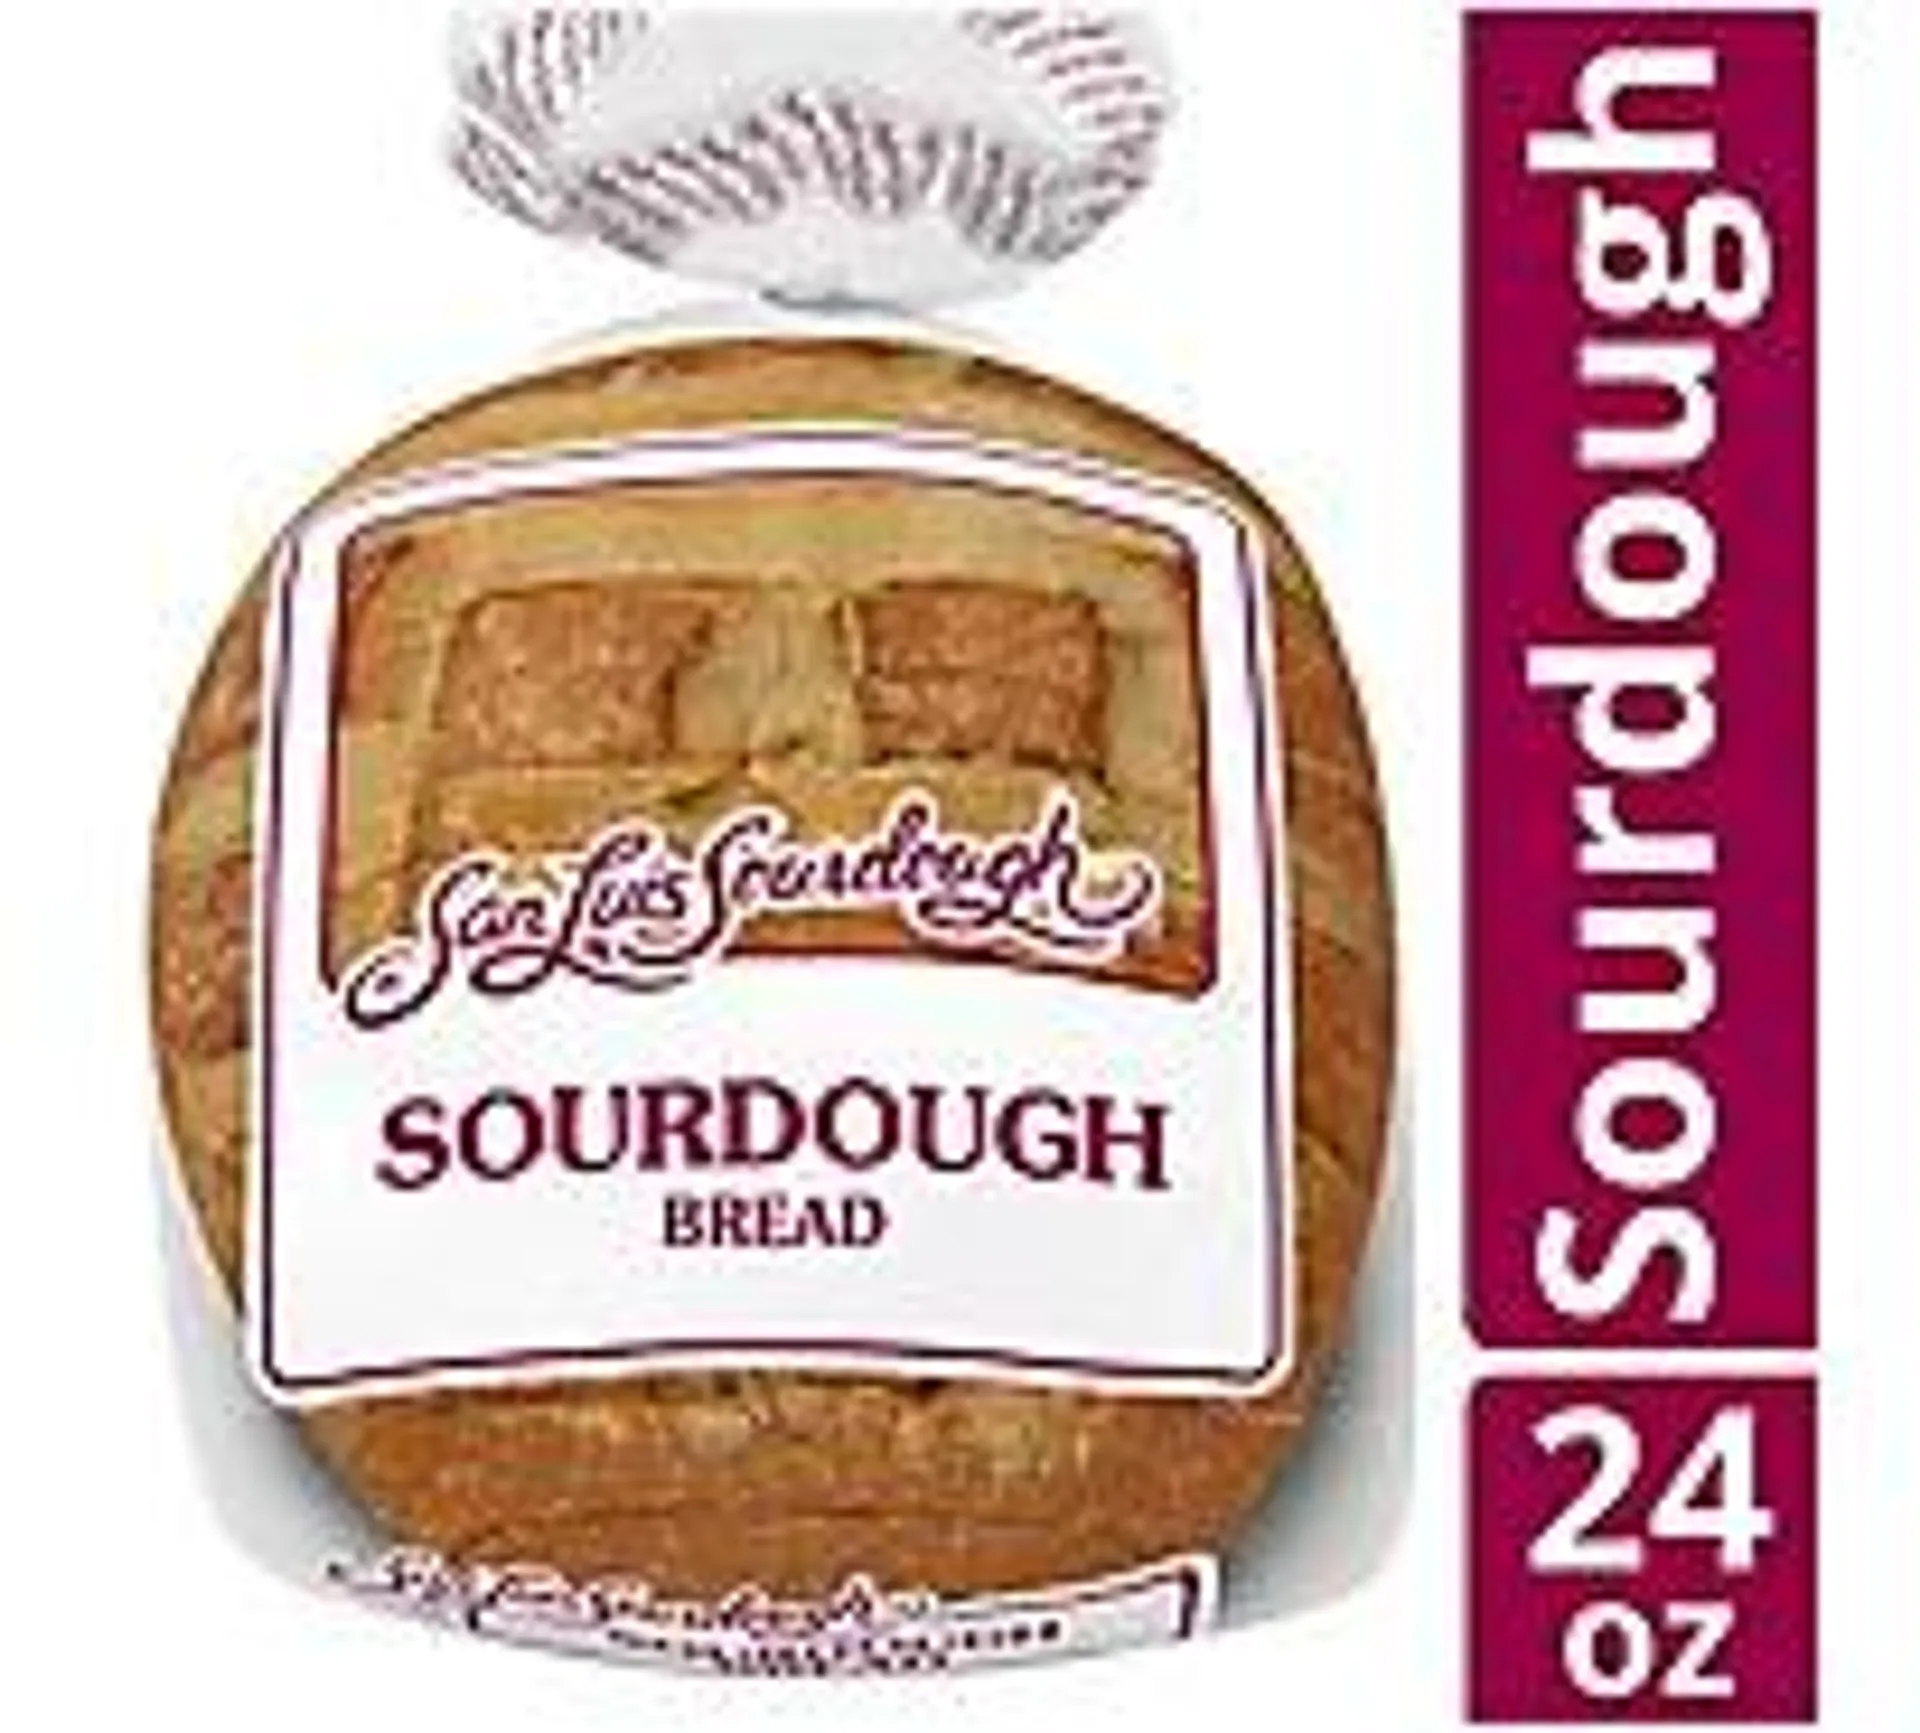 San Luis Sourdough Bread - 24 Oz